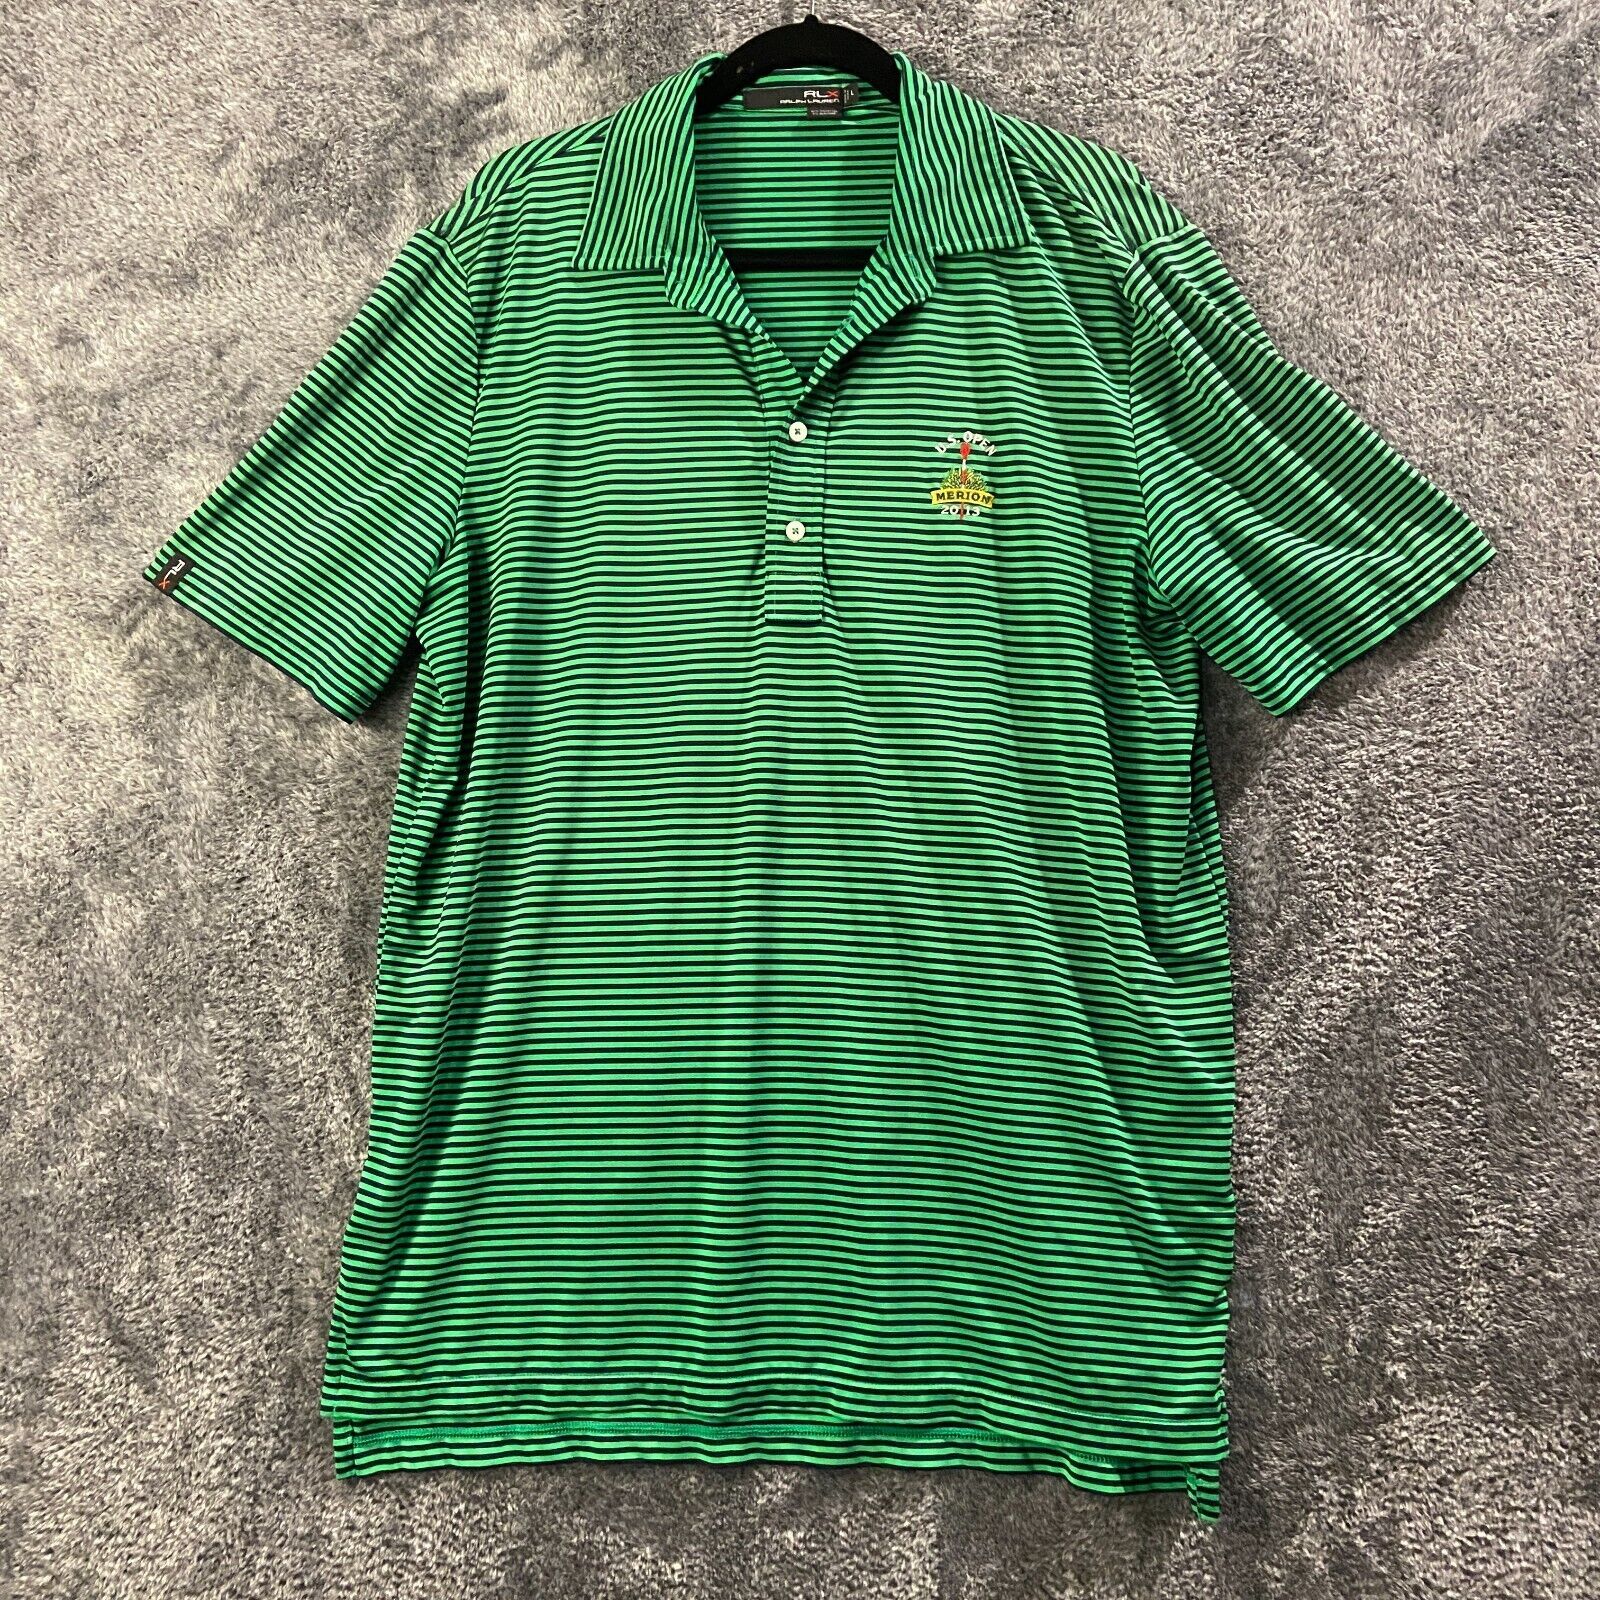 Ralph Lauren X Polo Shirt Mens Large Green Striped US Open Merion 2013 Light - $12.99